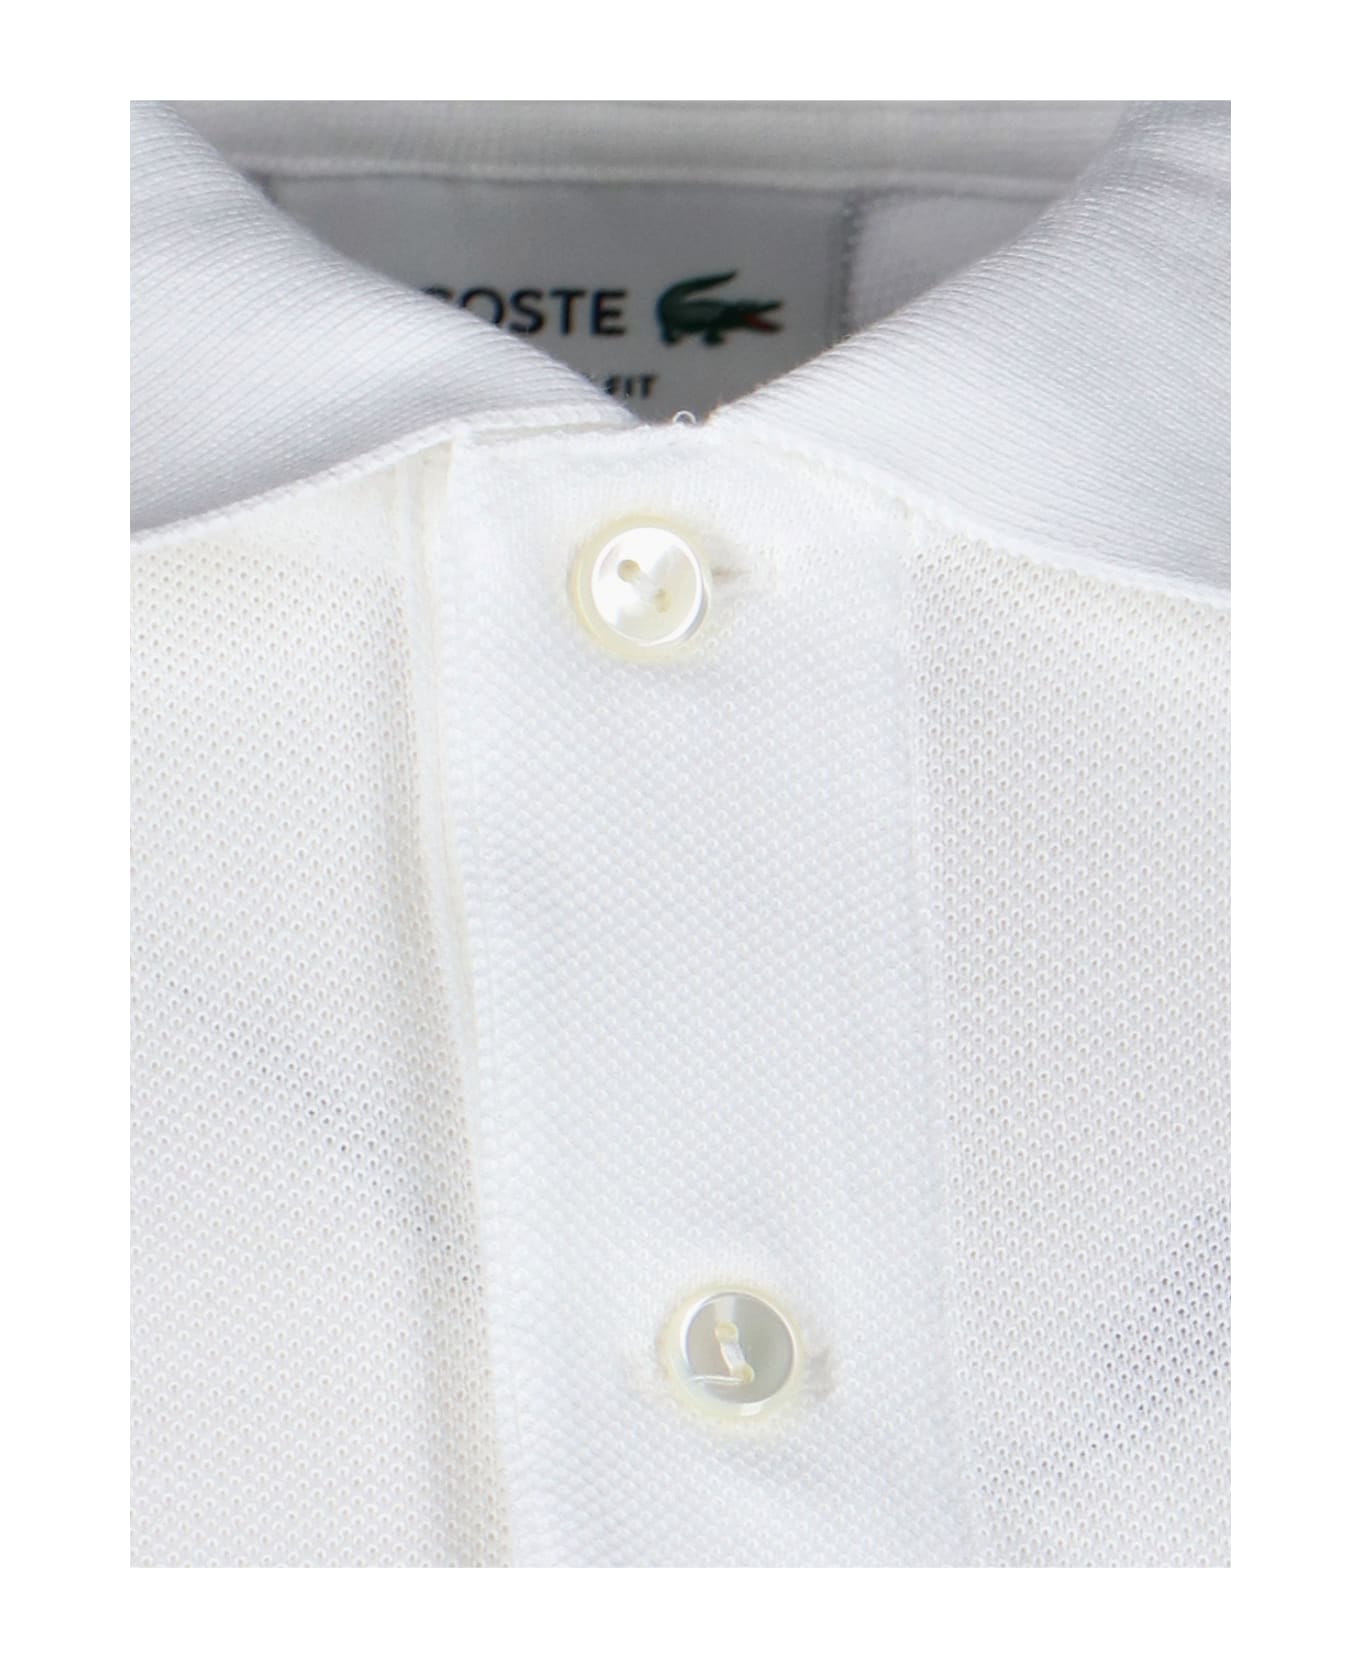 Lacoste Classic Design Polo Shirt Lacoste - WHITE